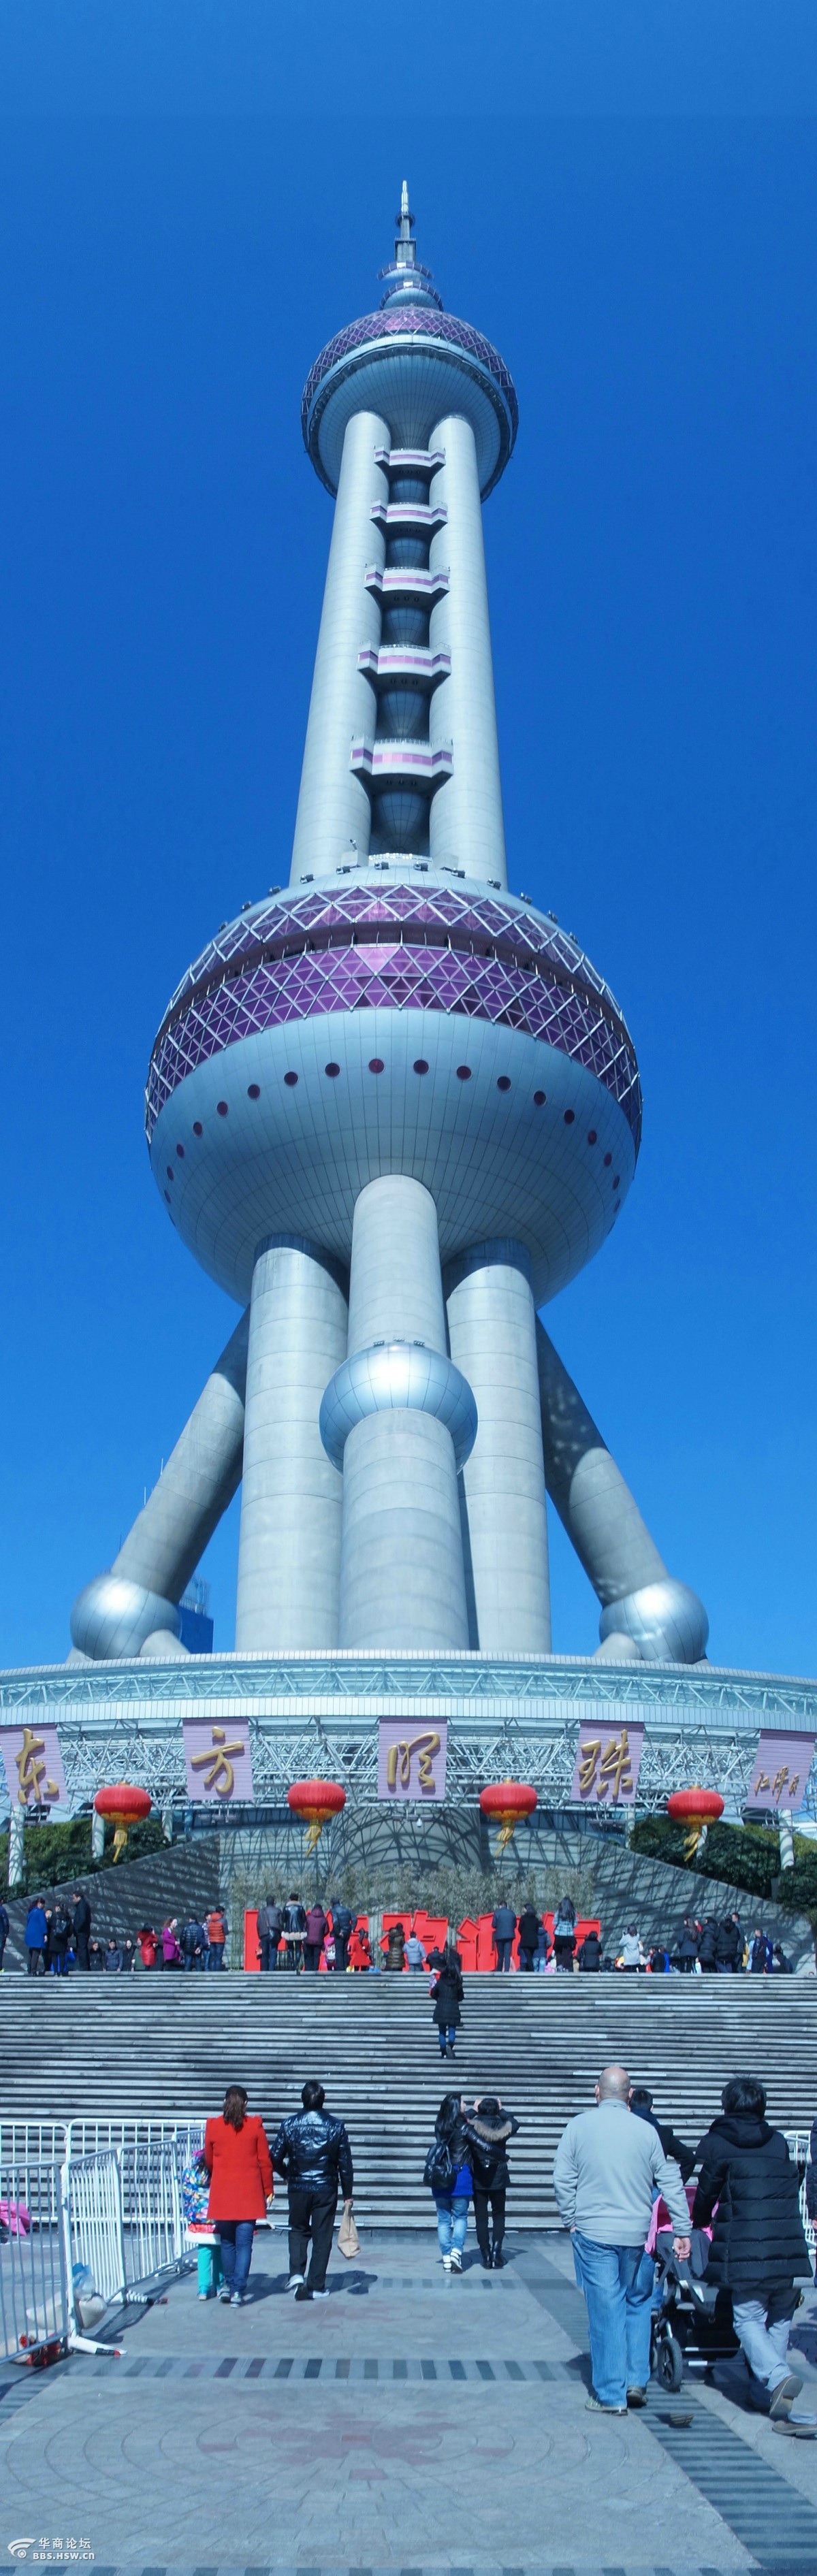 上海东方明珠电视塔由塔座,3根直径为9米的擎天大柱,下球体,中球体和